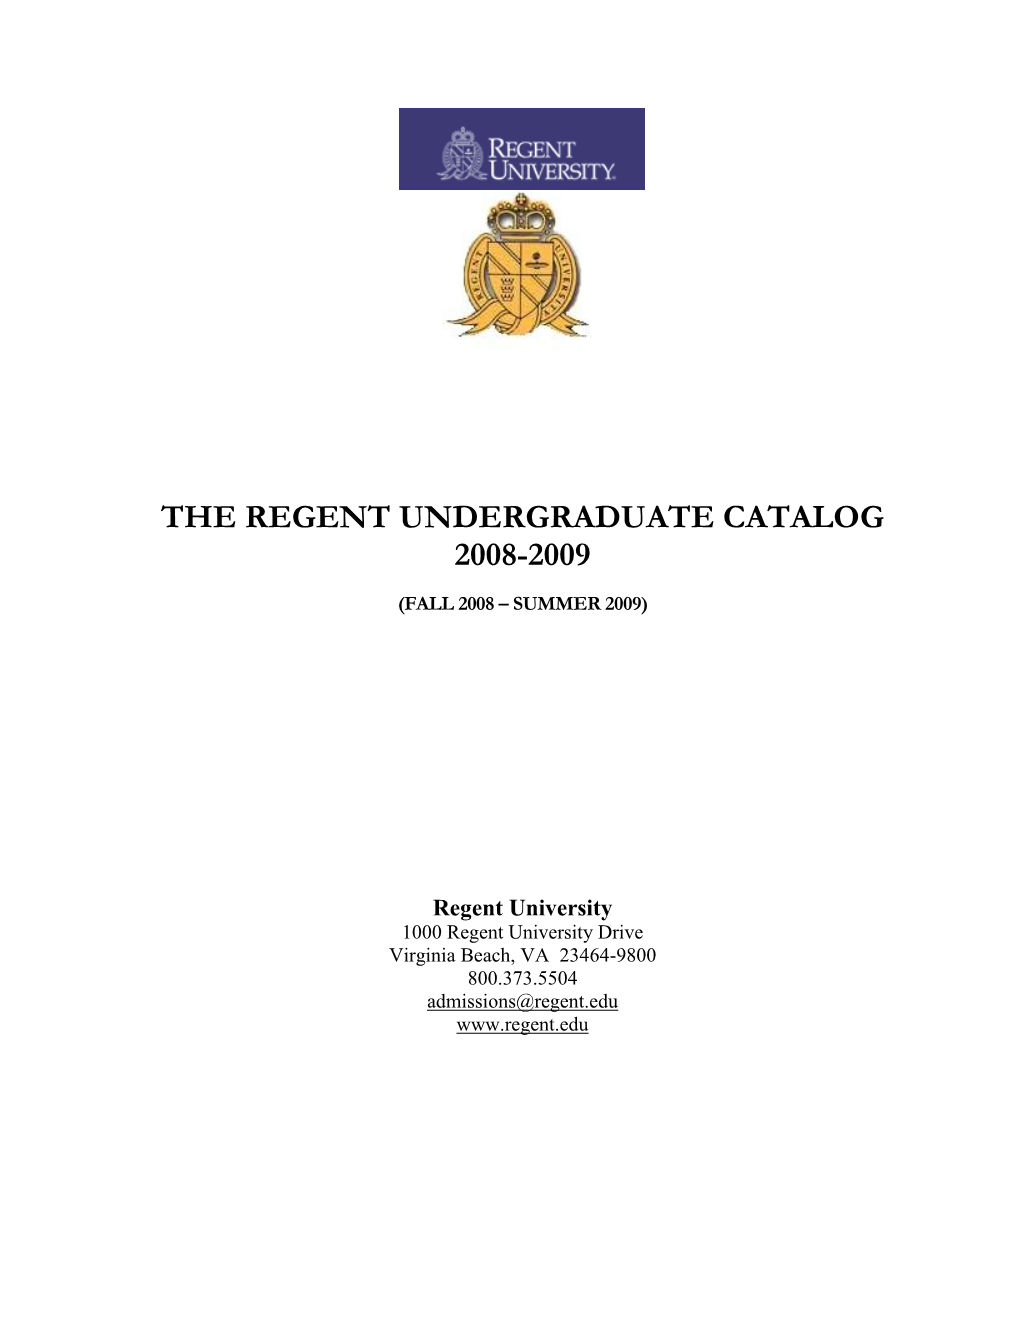 The Regent Undergraduate Catalog 2008-2009